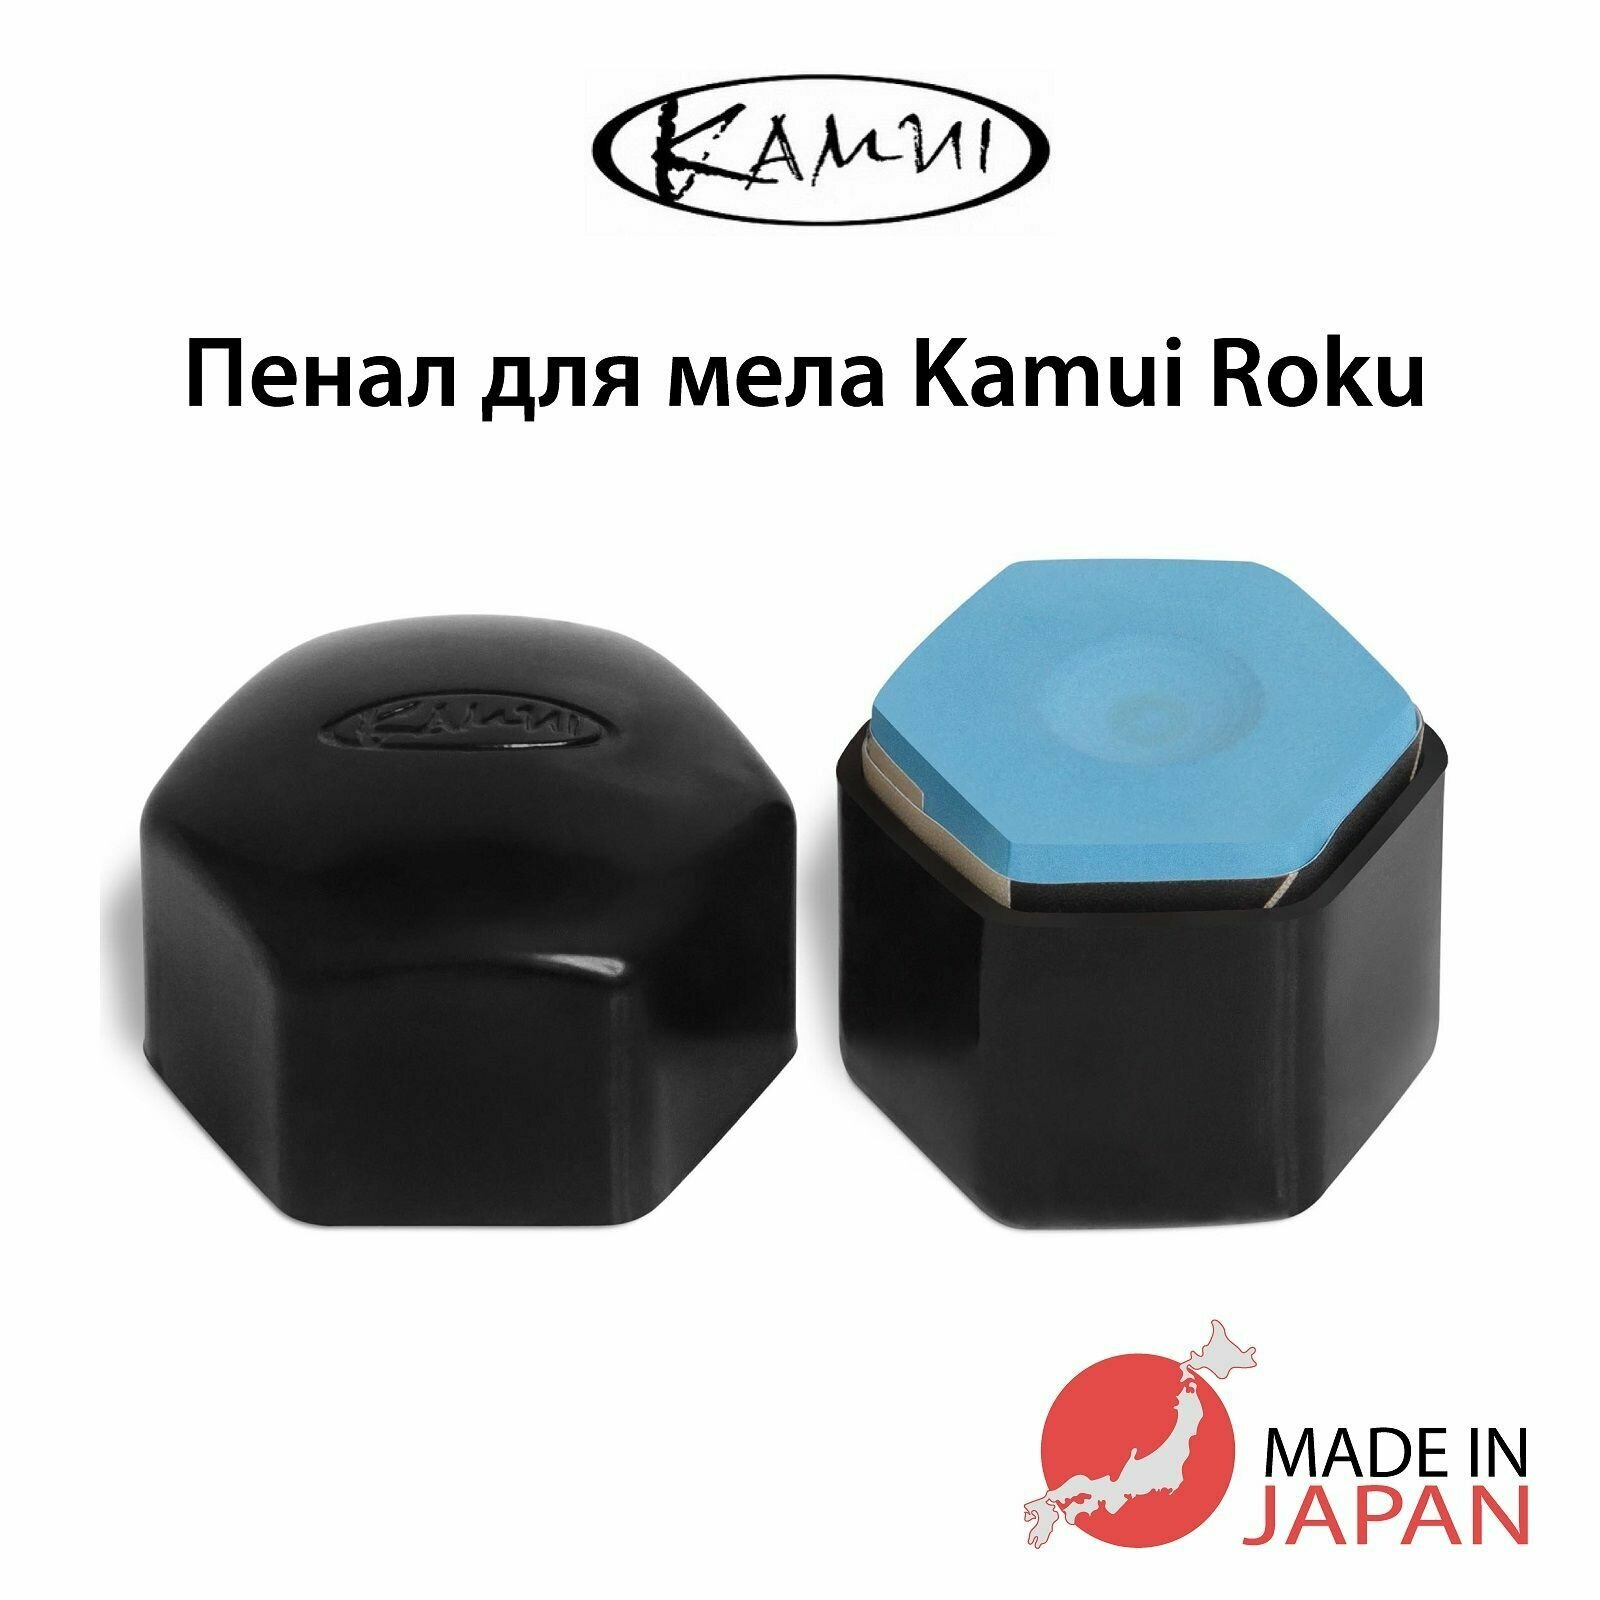 Пенал для бильярдного мела Kamui Roku с магнитом, черный, 1 шт.